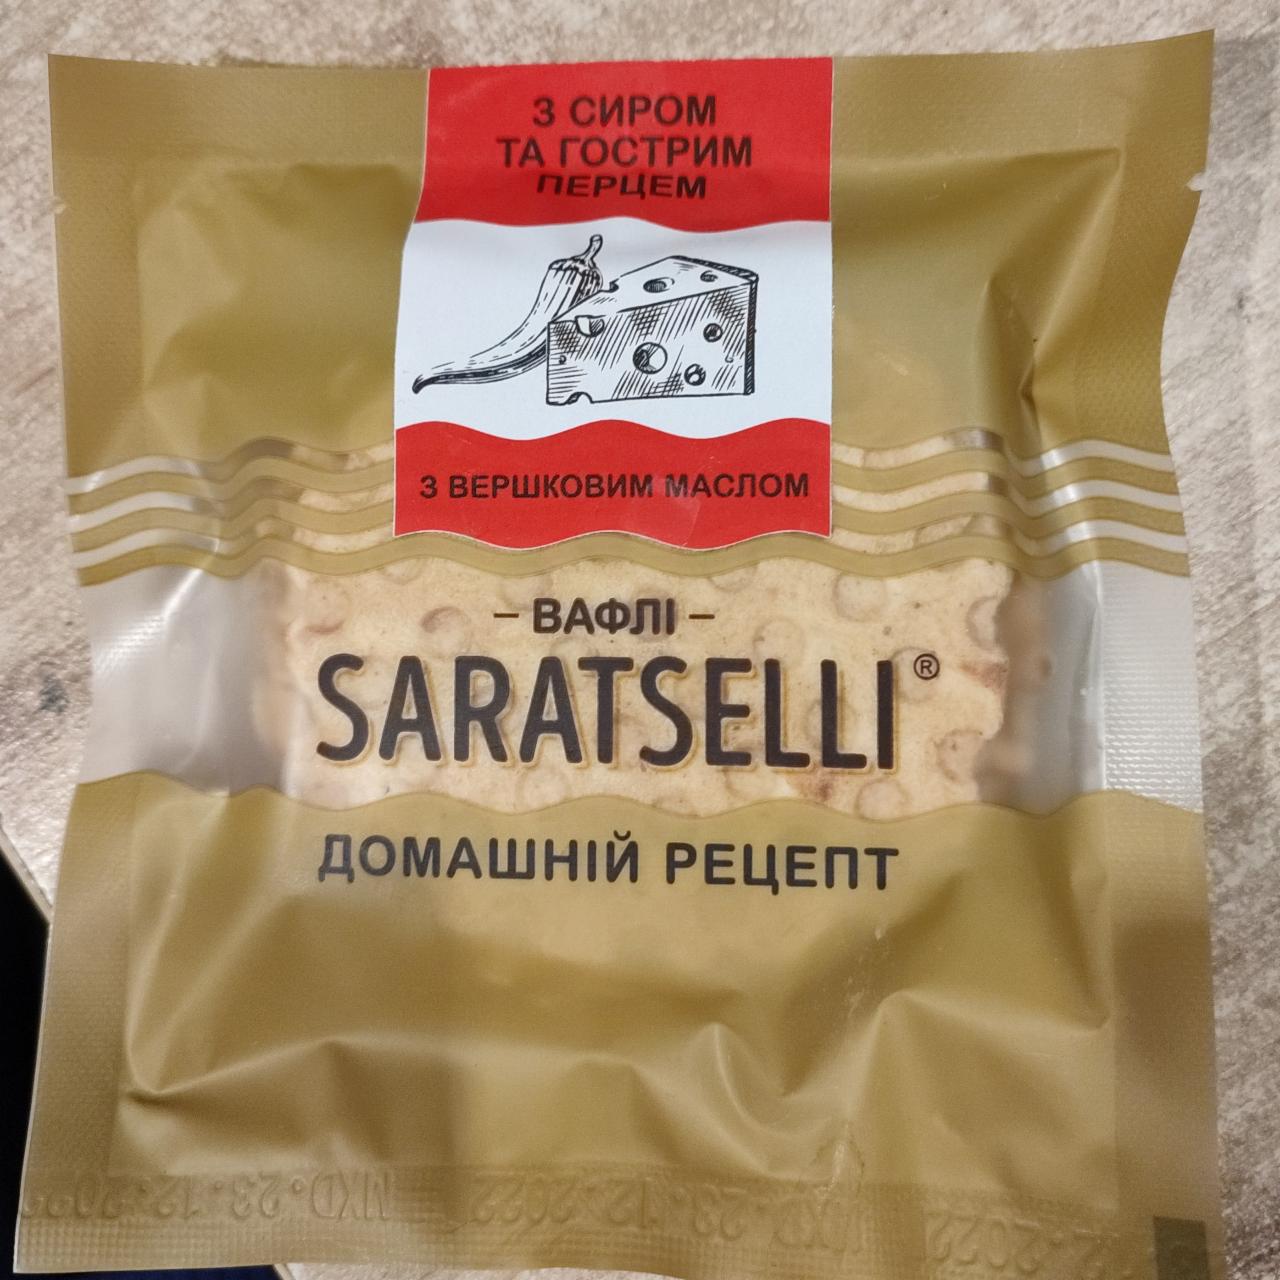 Фото - Вафлі з сиром та гострим перцем Saratselli